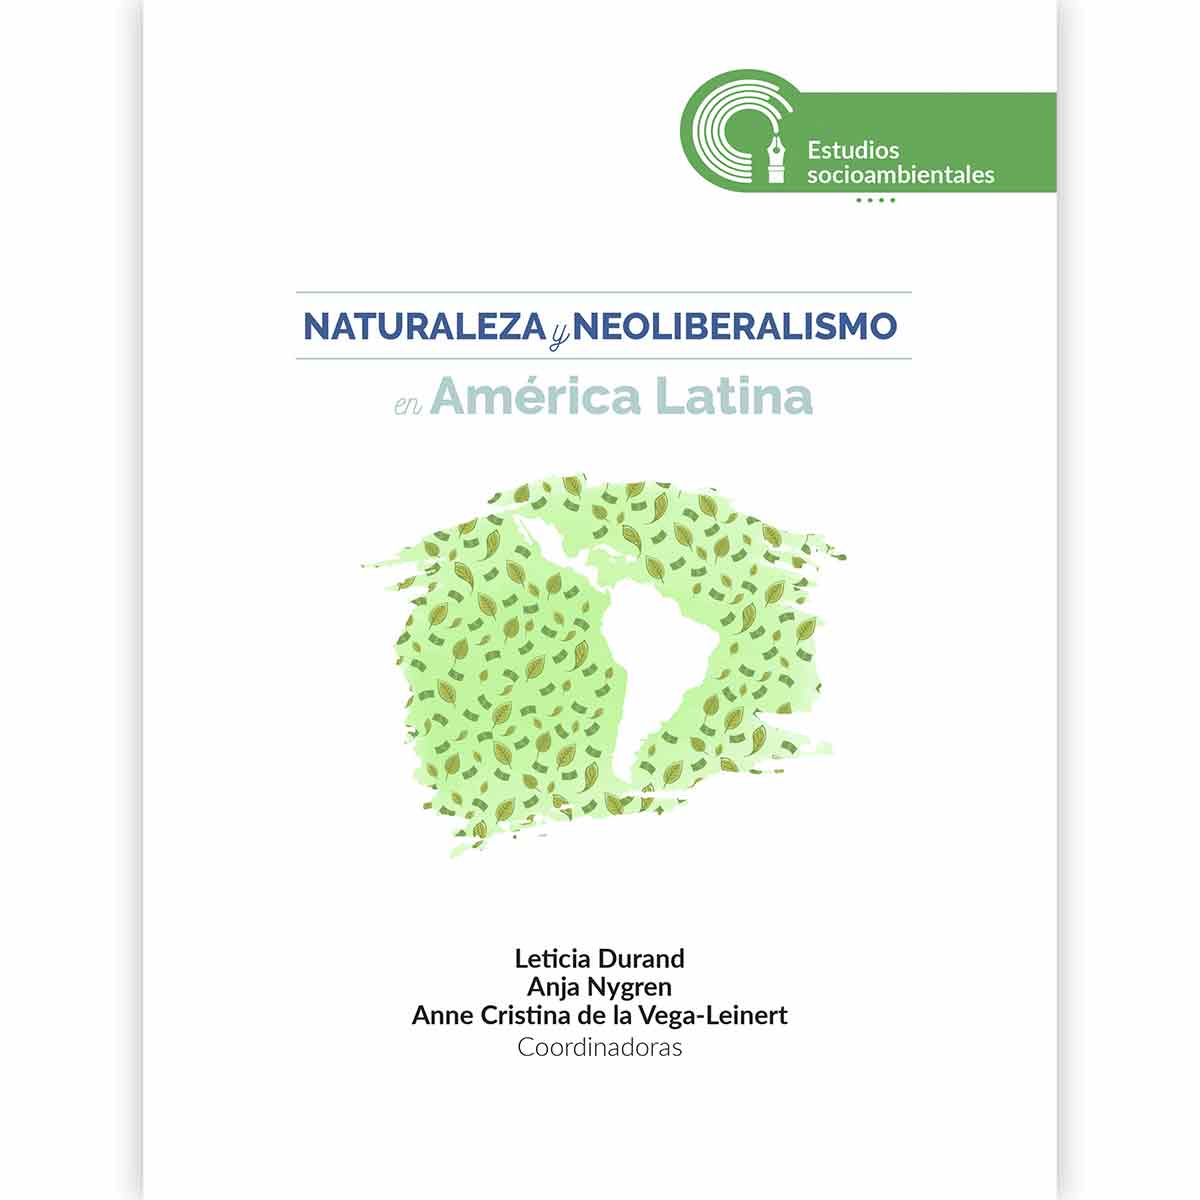 NATURALEZA Y NEOLIBERALISMO EN AMÉRICA LATINA